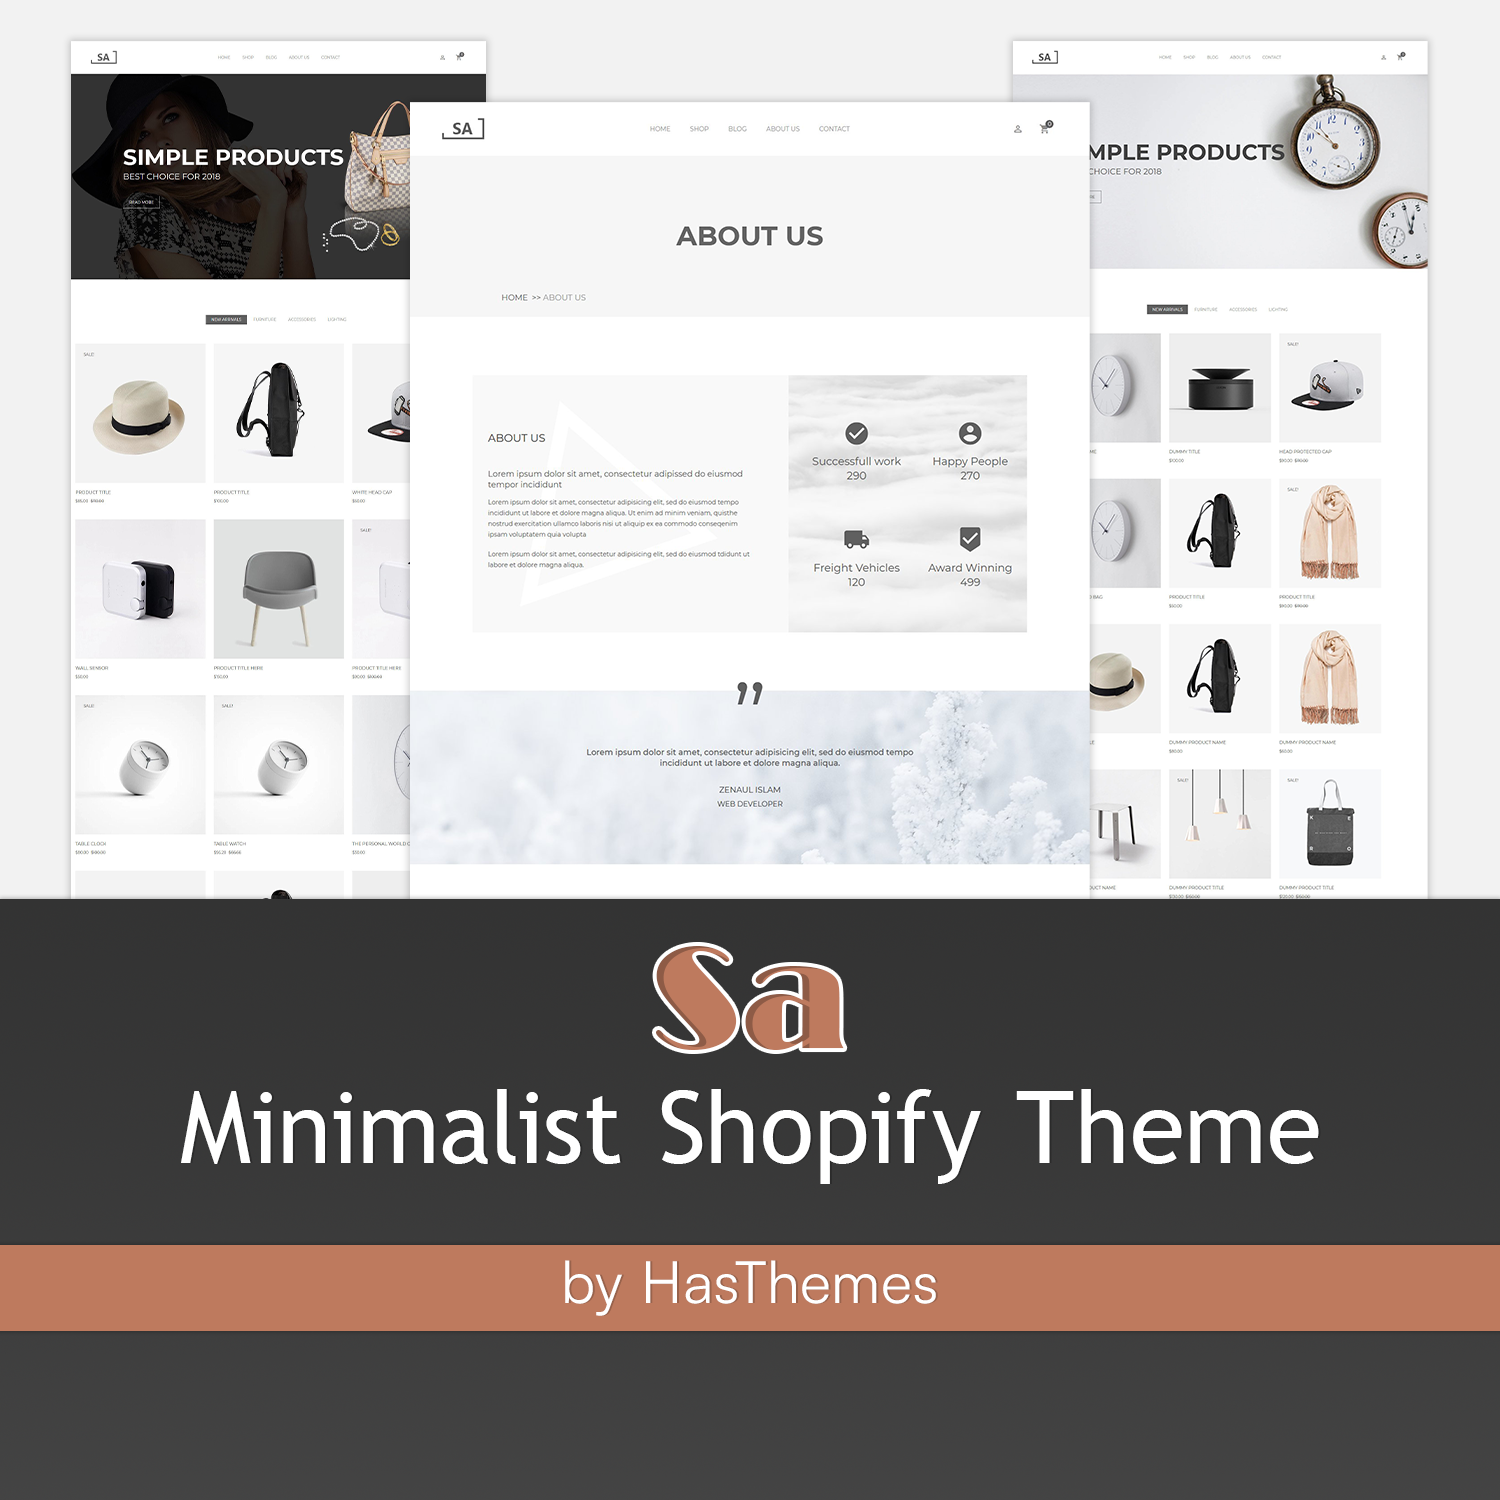 Preview minimalist shopify theme – sa.